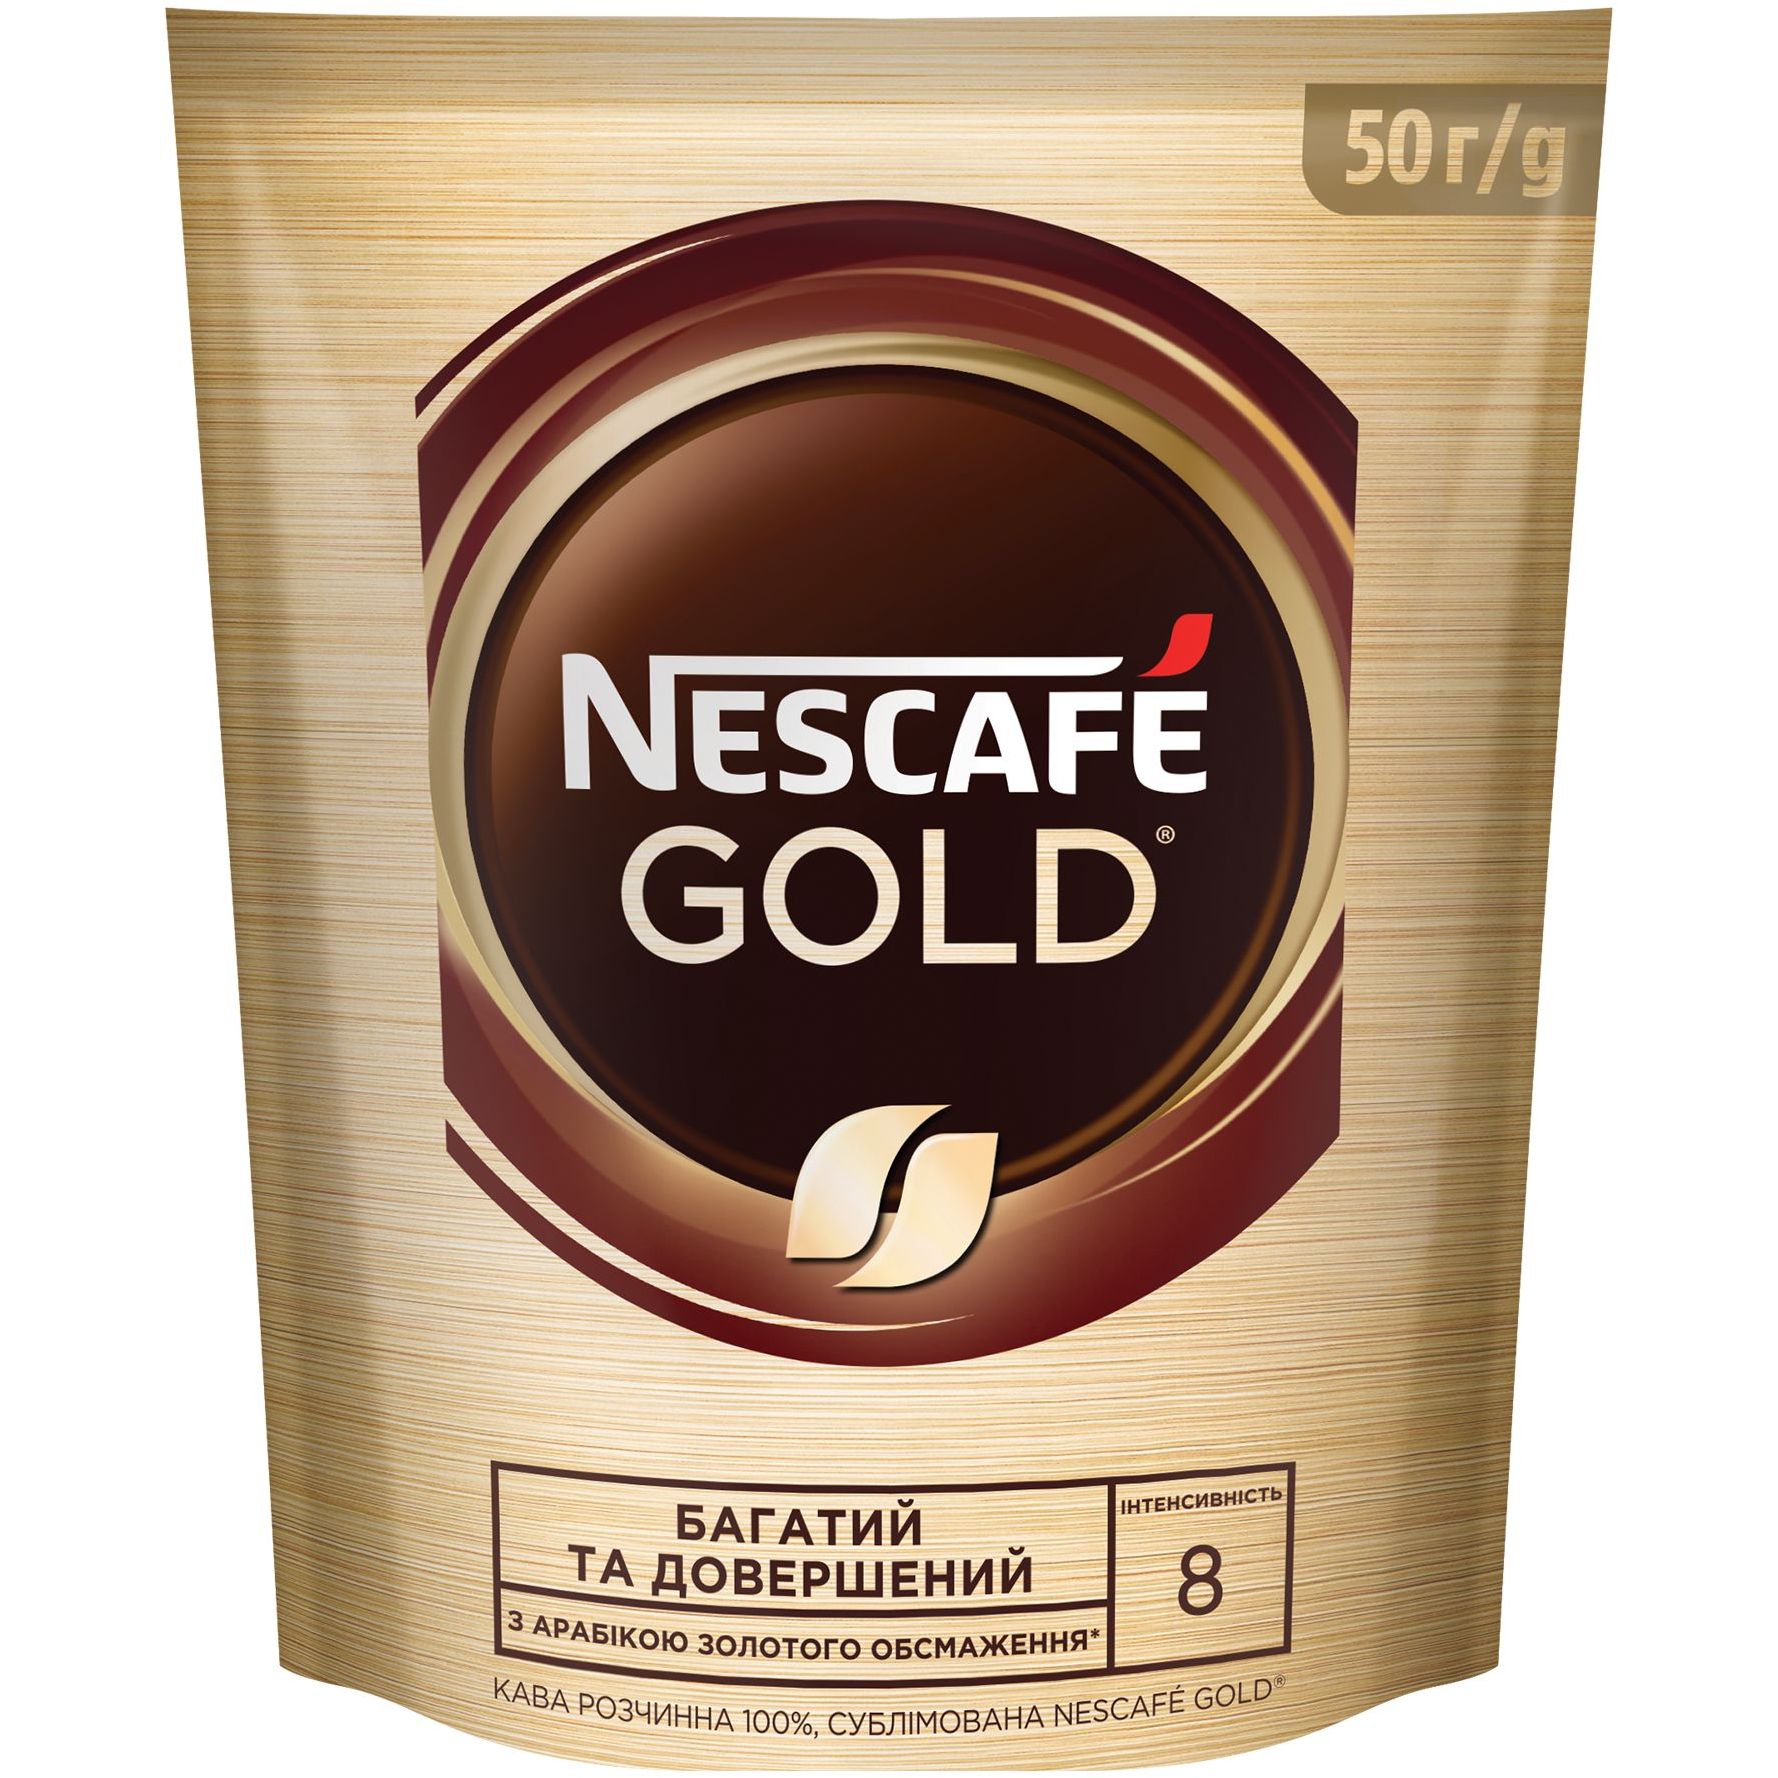 Кофе растворимый Nescafe Gold, 50 г - фото 1